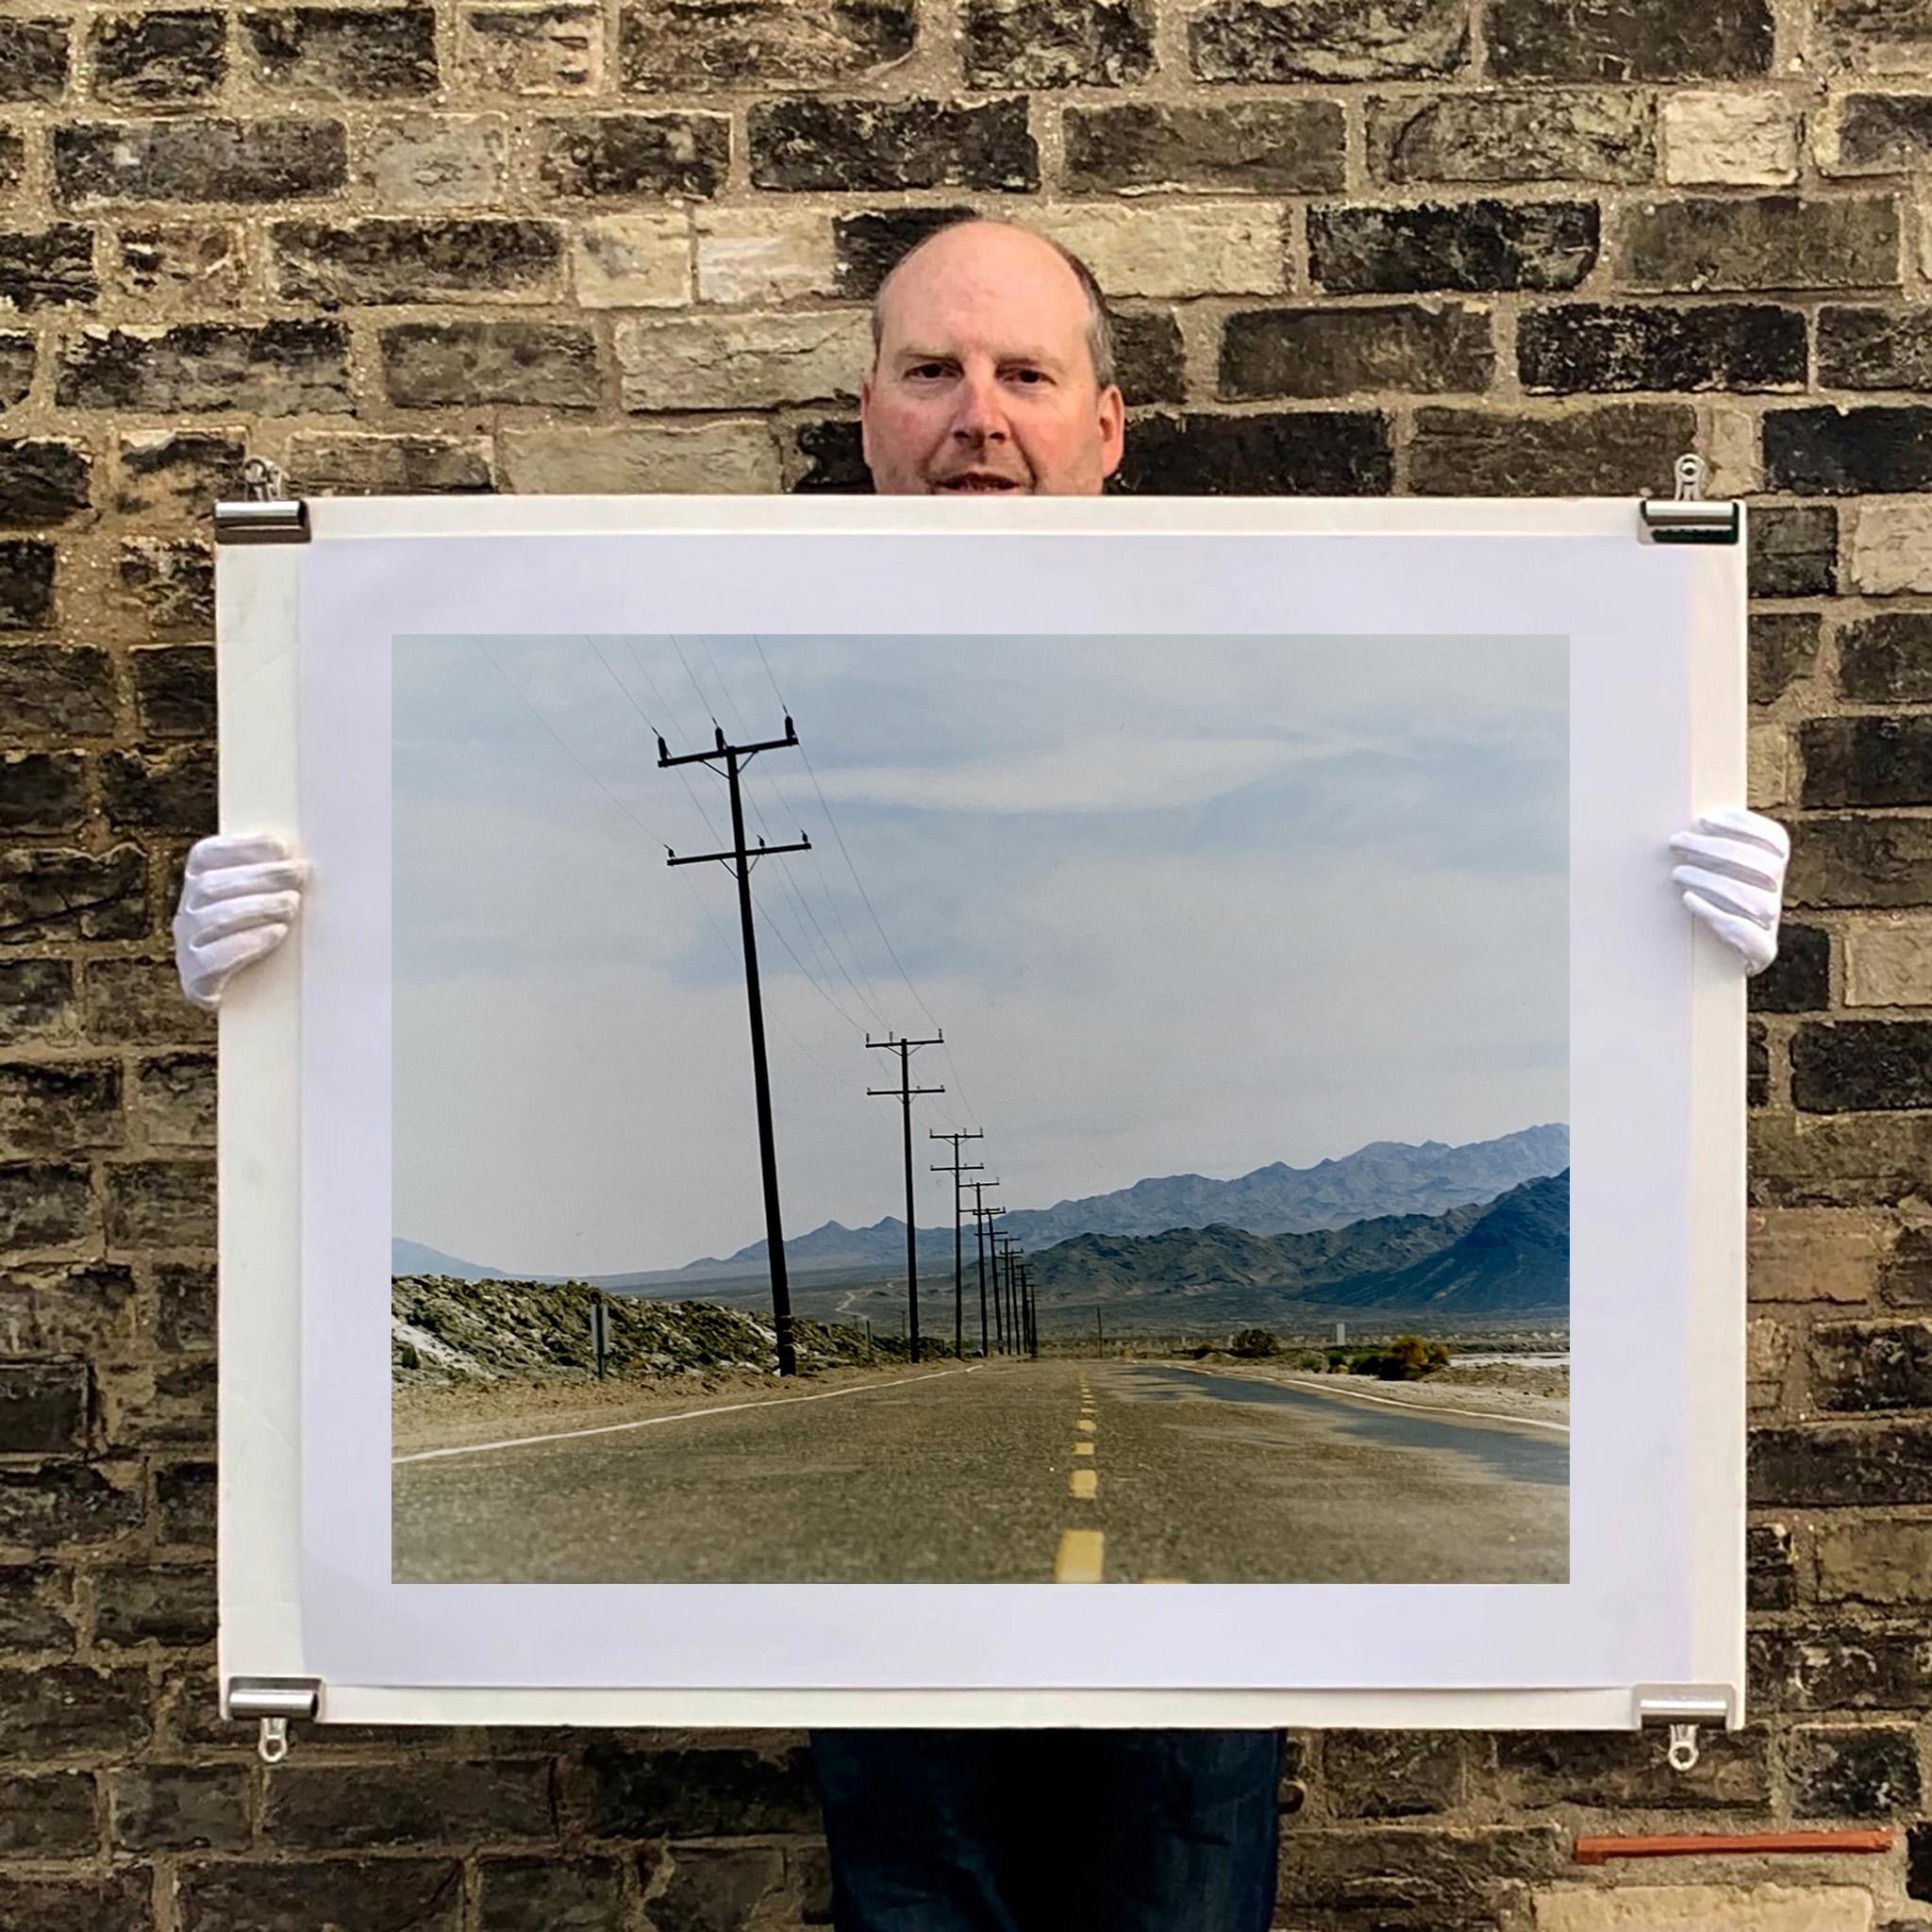 Amboy Road, Kalifornien – amerikanische Landschaftsfotografie – Photograph von Richard Heeps